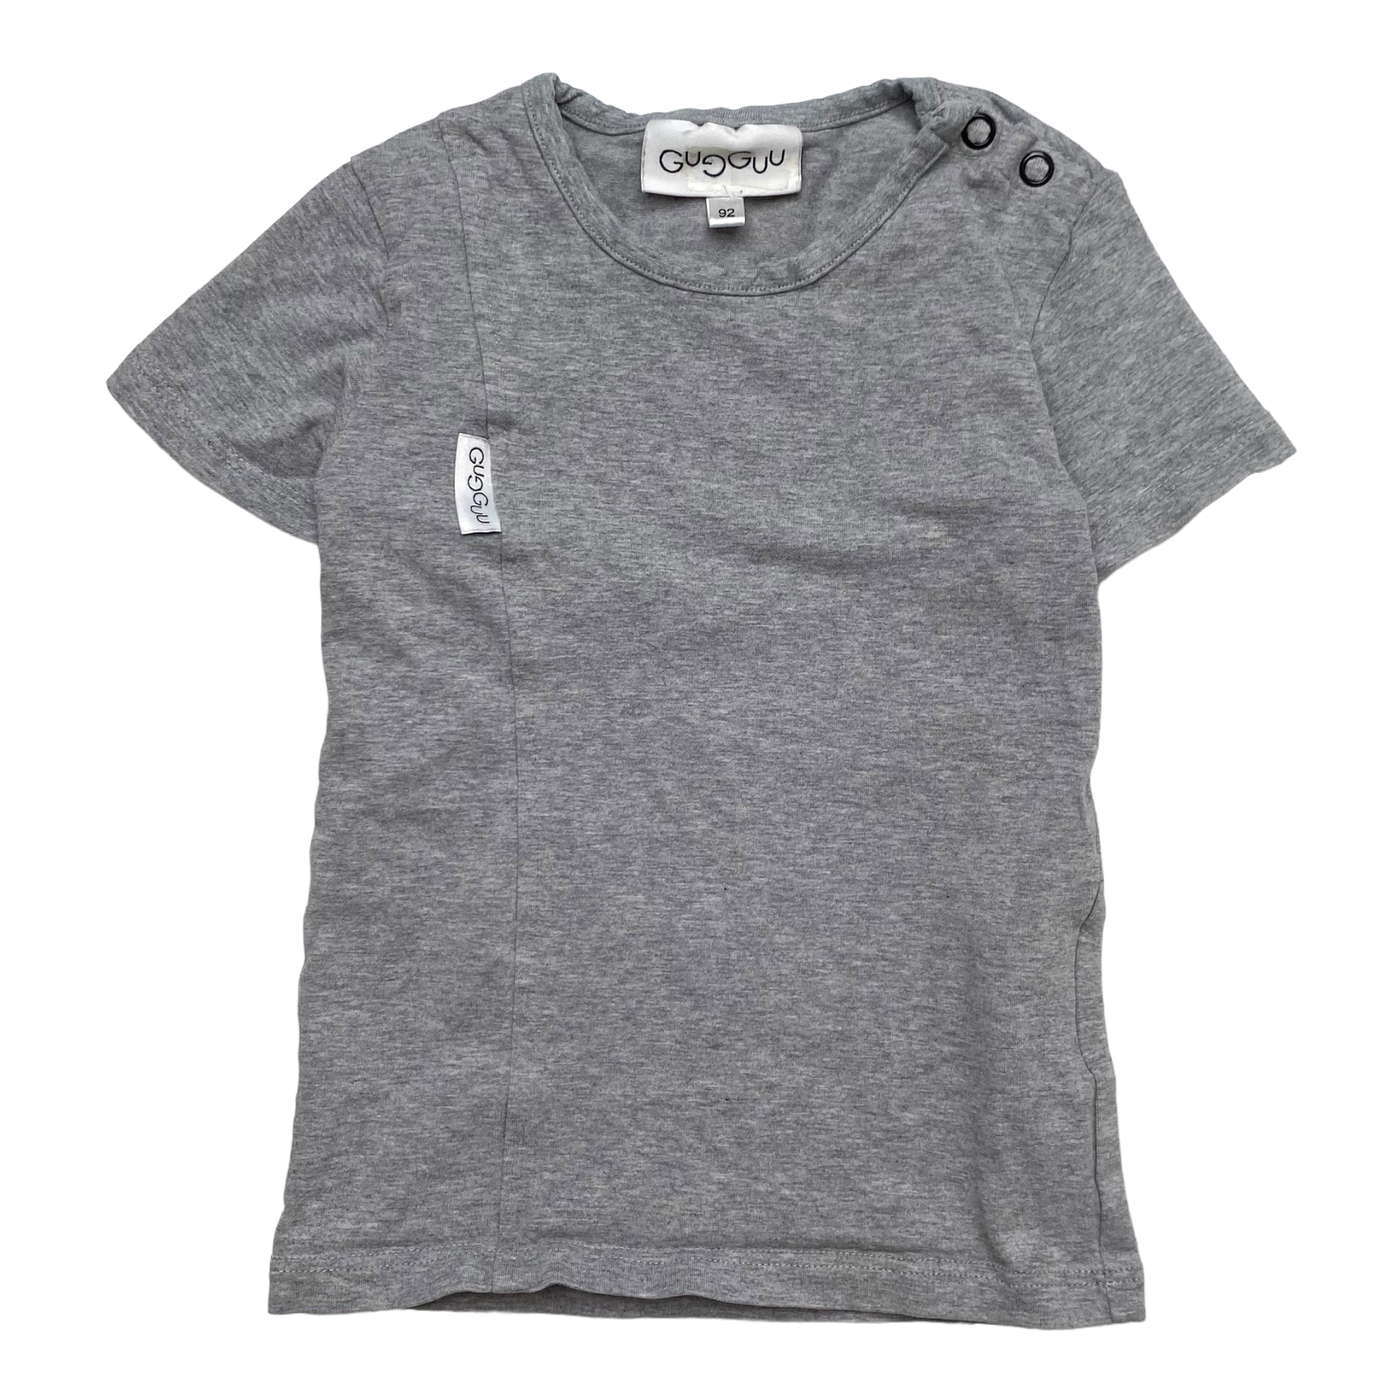 Gugguu t-shirt, grey | 92cm